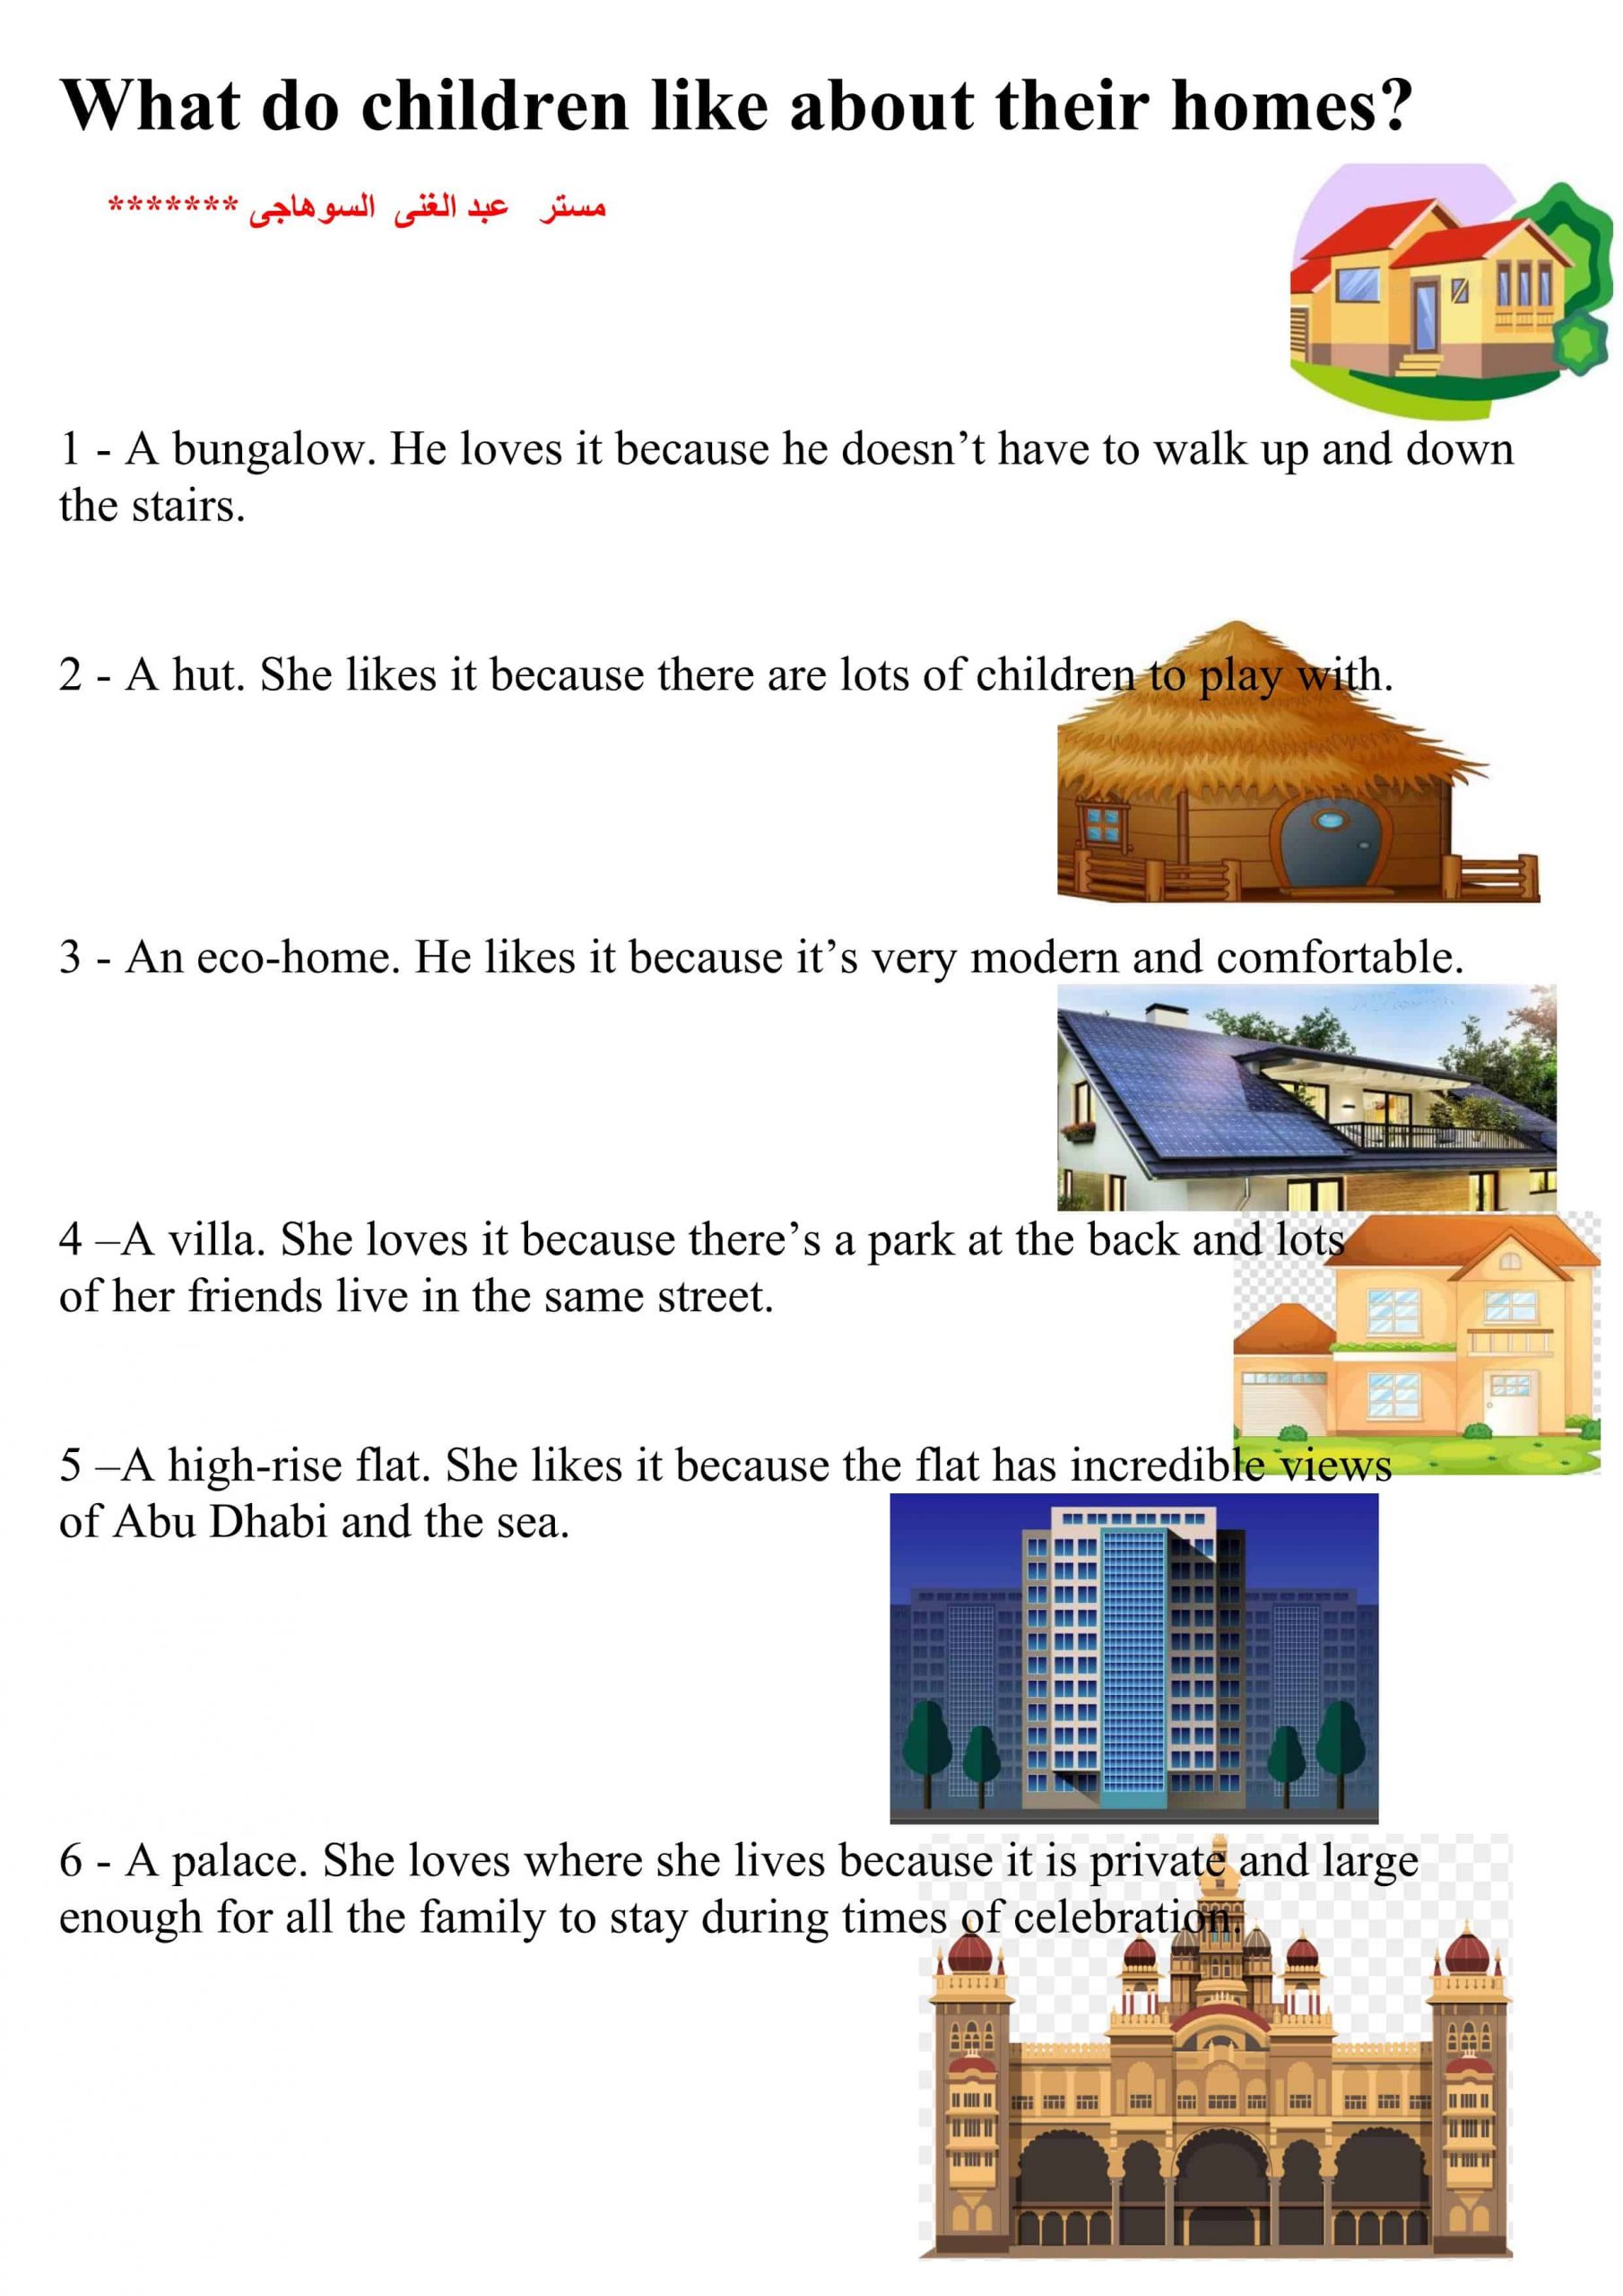 أوراق عمل الوحدة الأولى Homes الصف الخامس مادة اللغة الإنجليزية